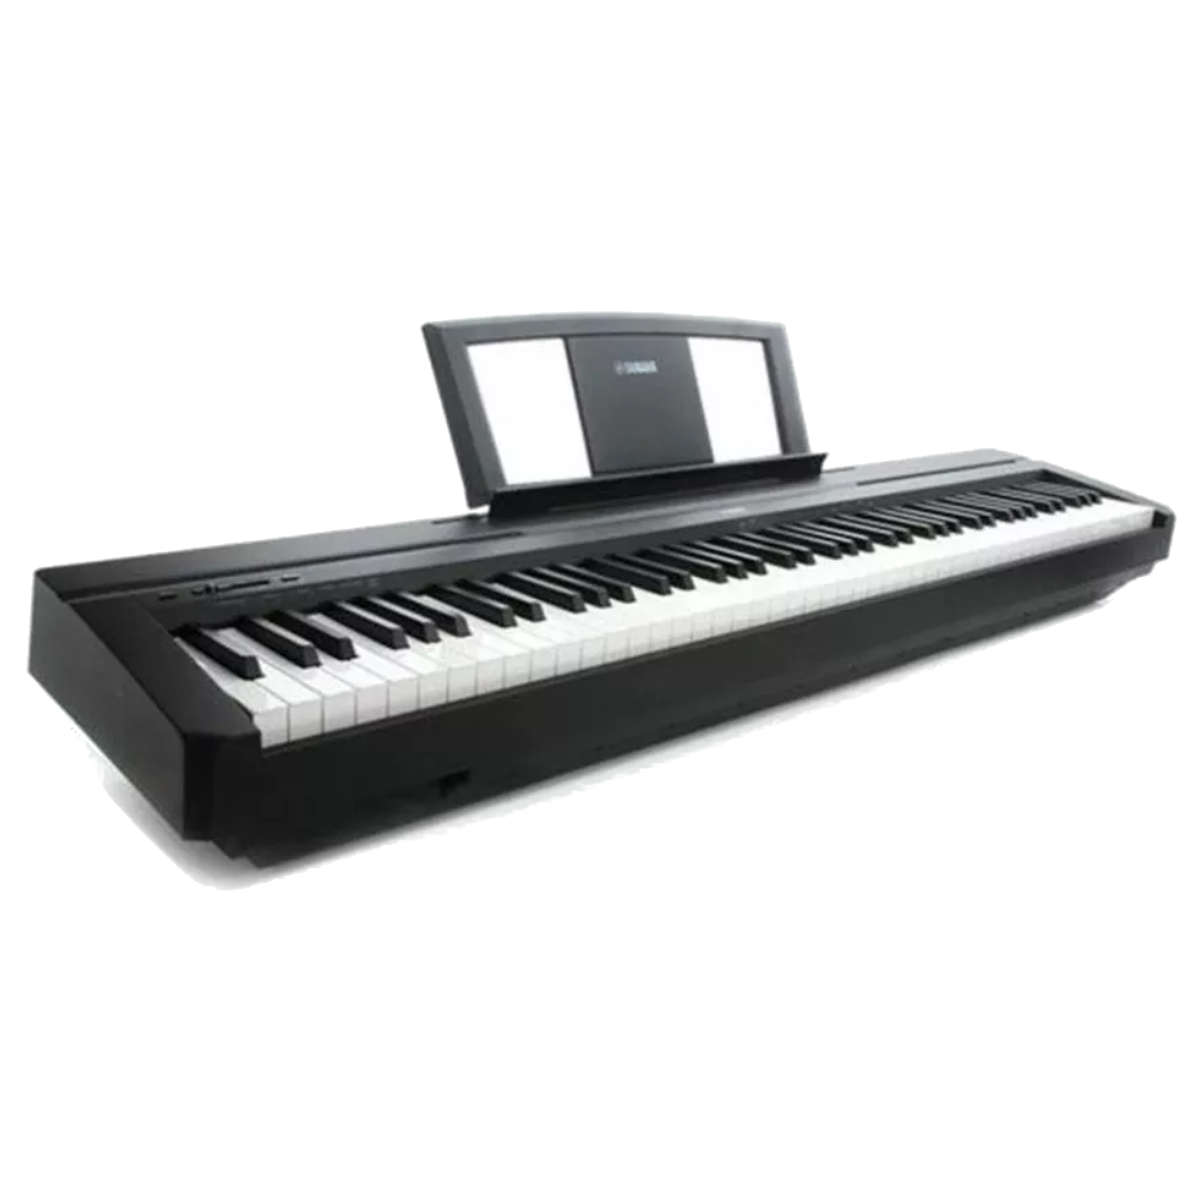 Yamaha P45: piano líder calidad-precio